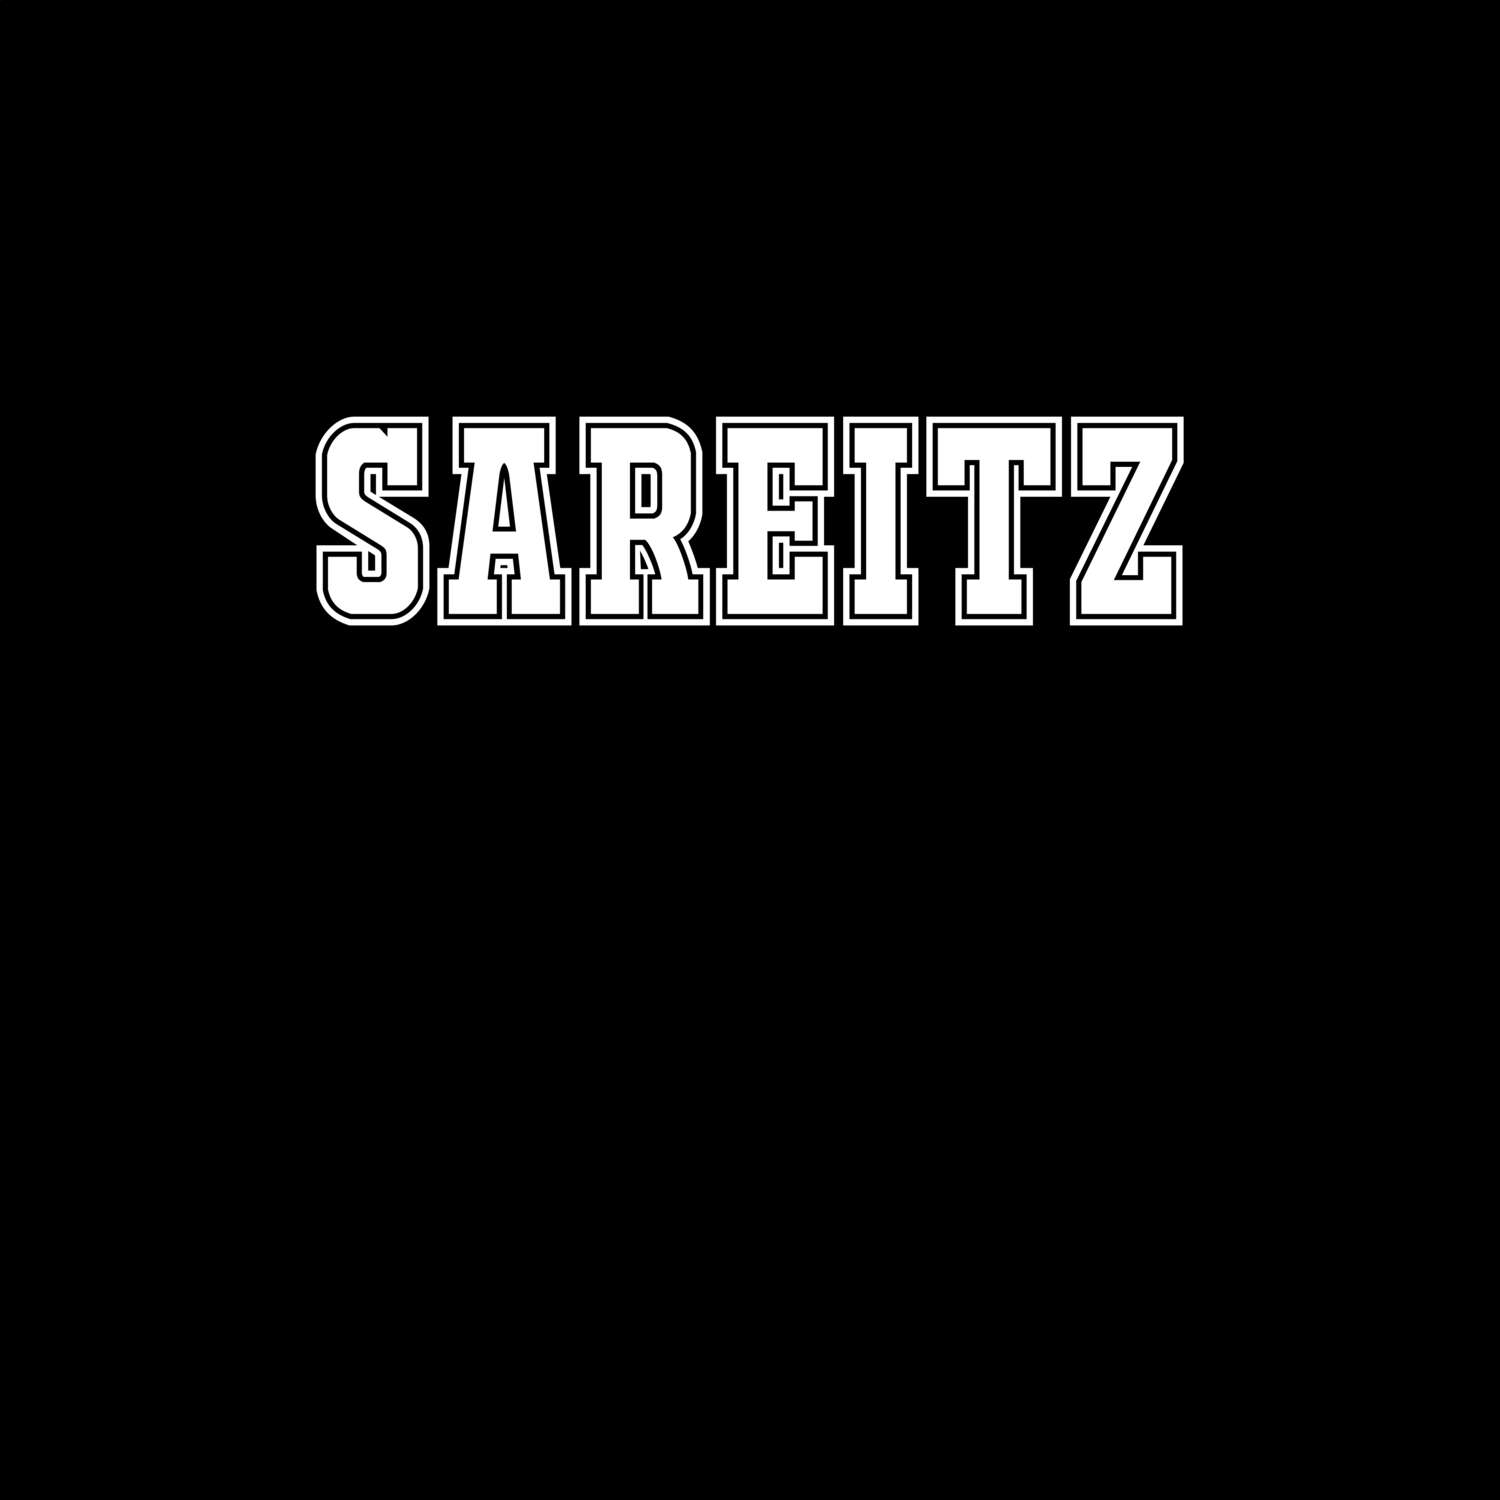 Sareitz T-Shirt »Classic«